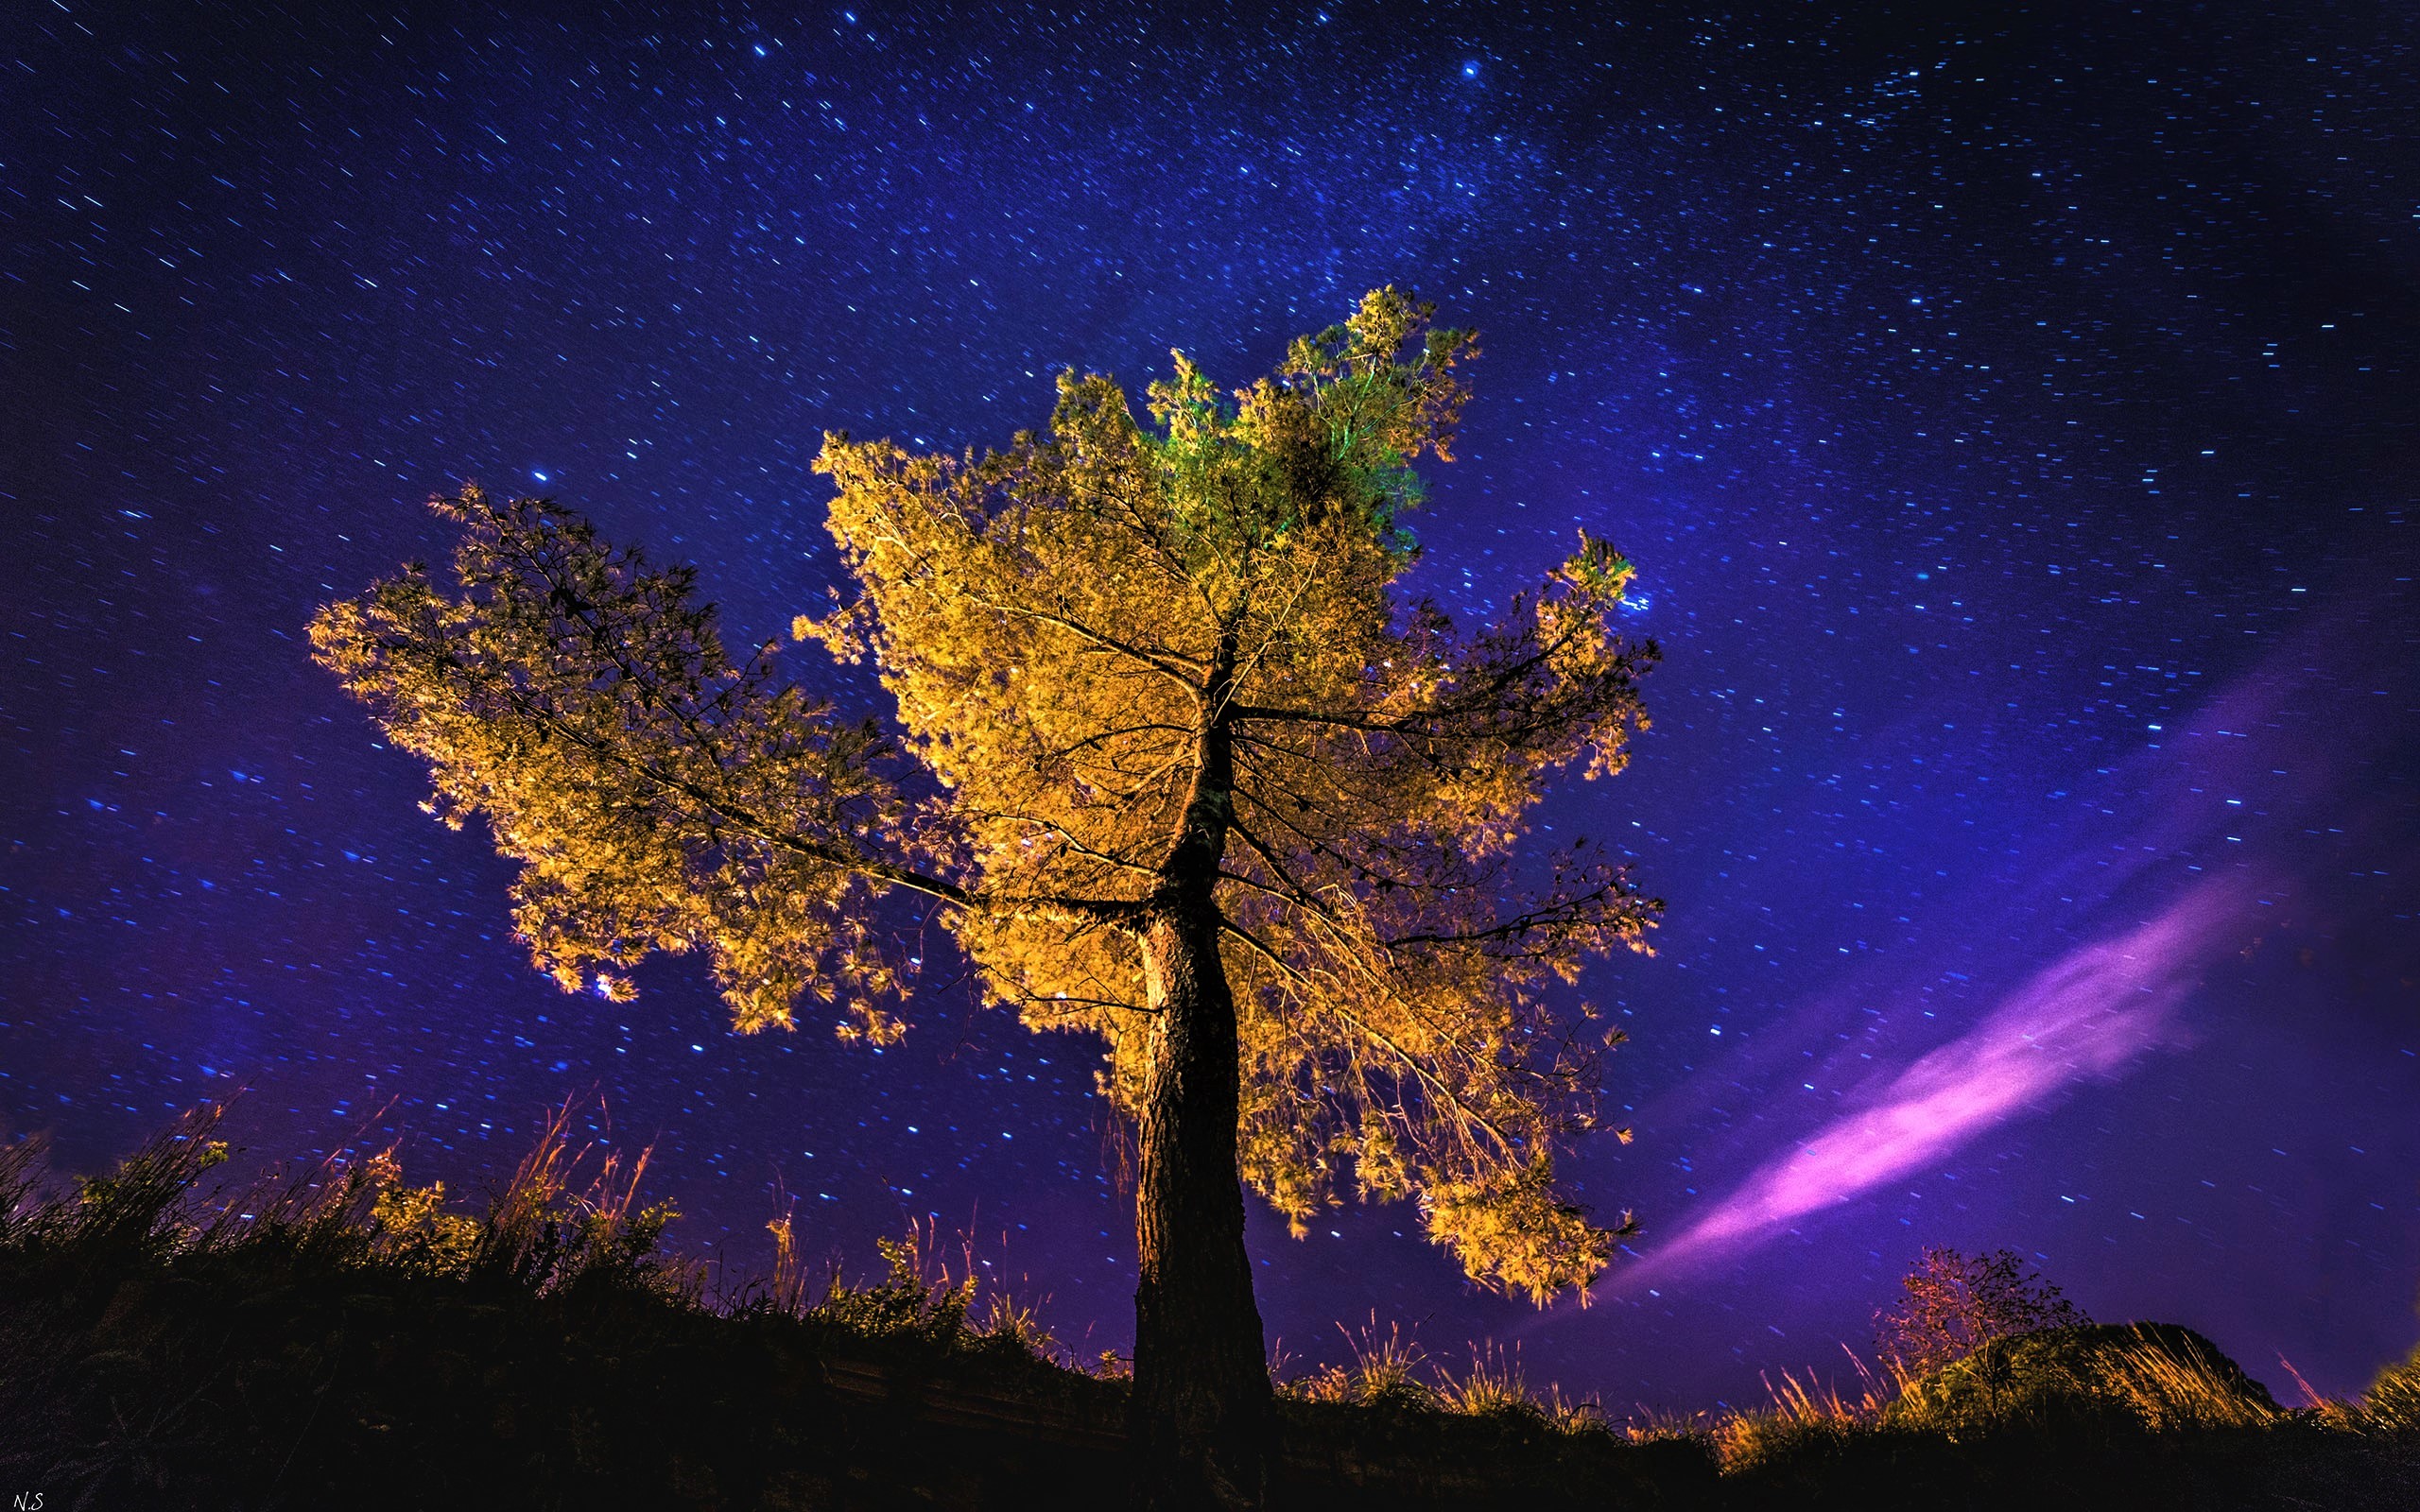 Autumn Tree on a Starry Night